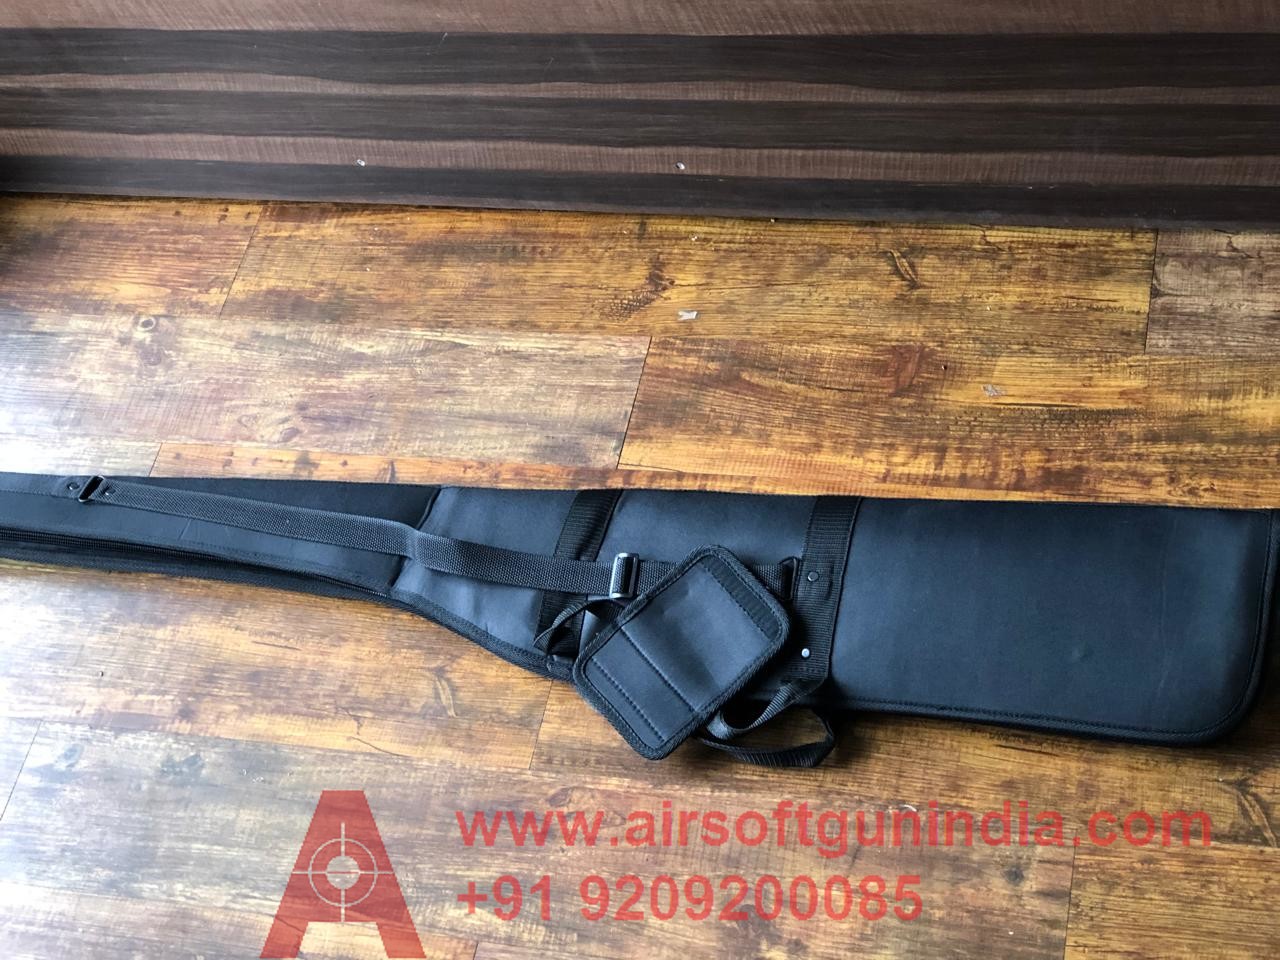 Airsoft Gun India High Quality Air Rifle Cover ( Black  Colour )